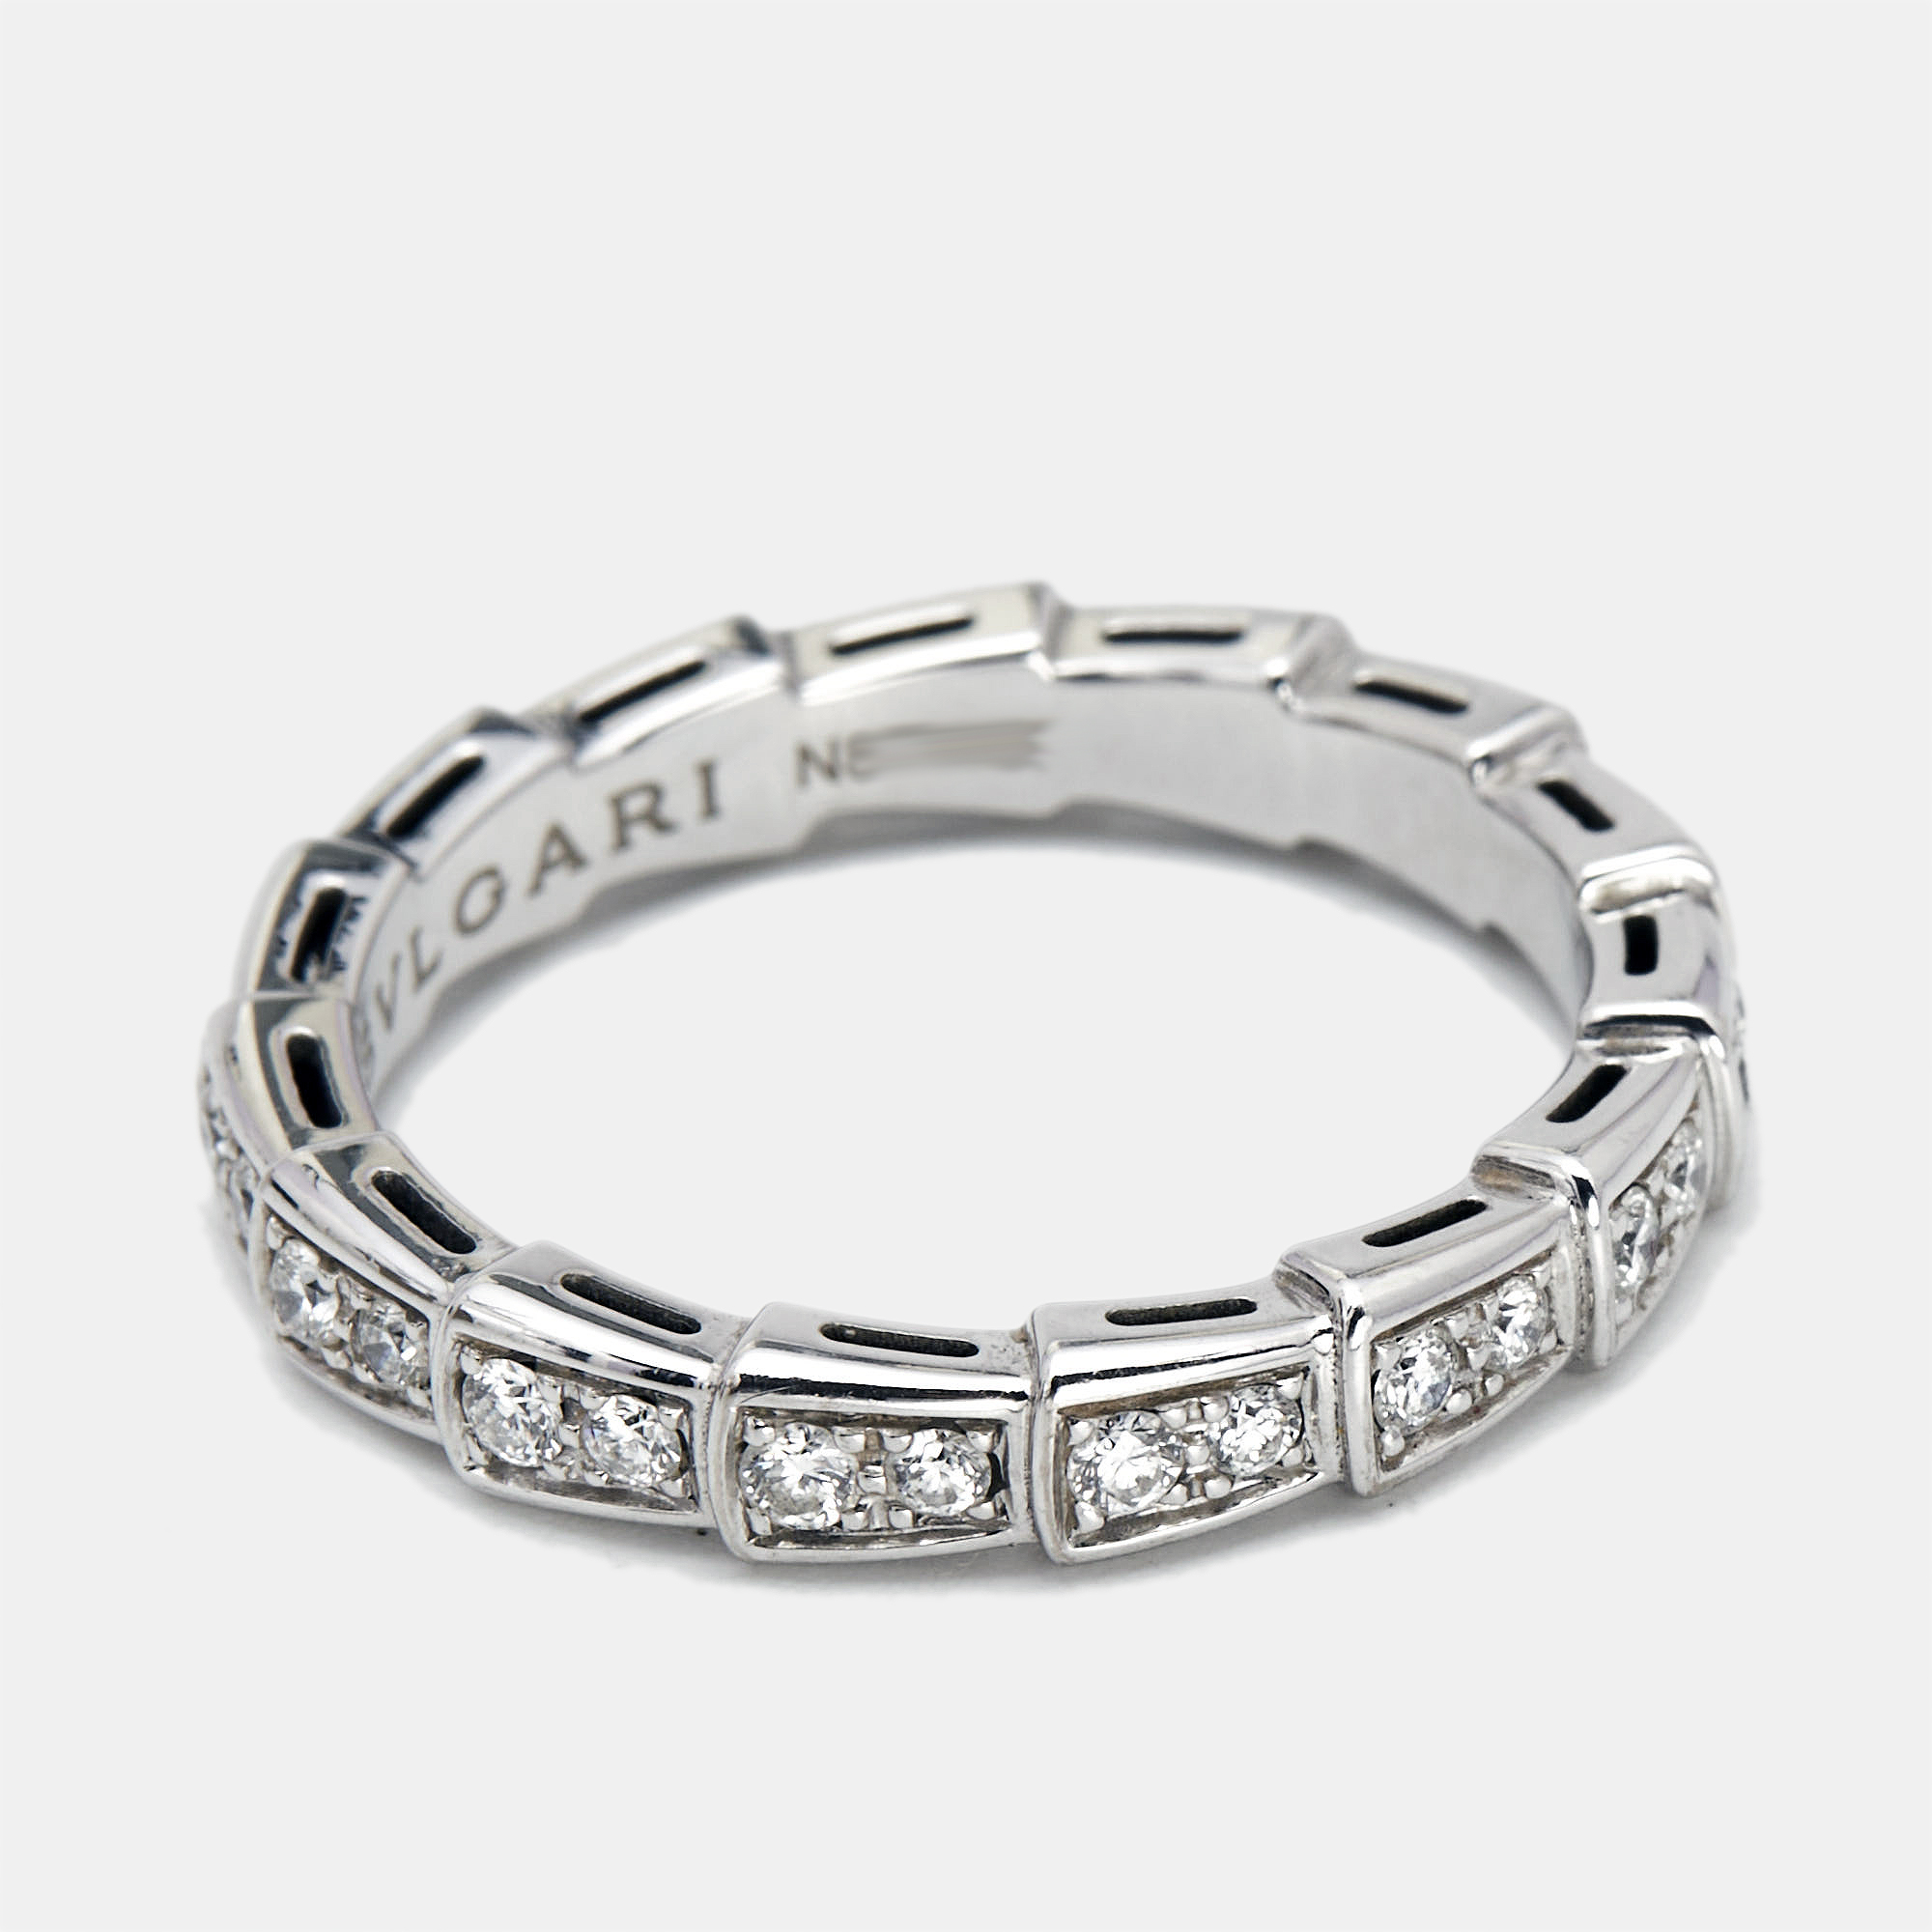 Bvlgari Serpenti Viper Diamonds 18k White Gold Ring Size 57